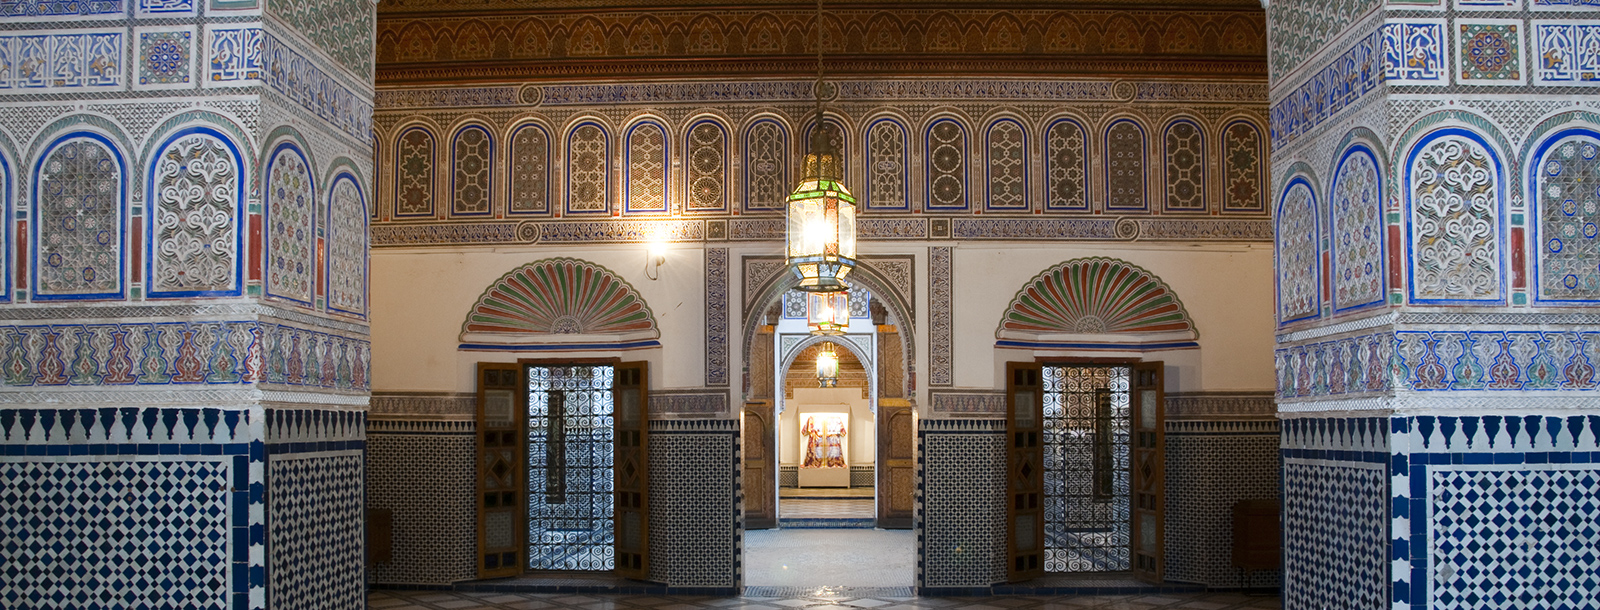 Marrakech-musée-dar-si-Said-jelij-monument